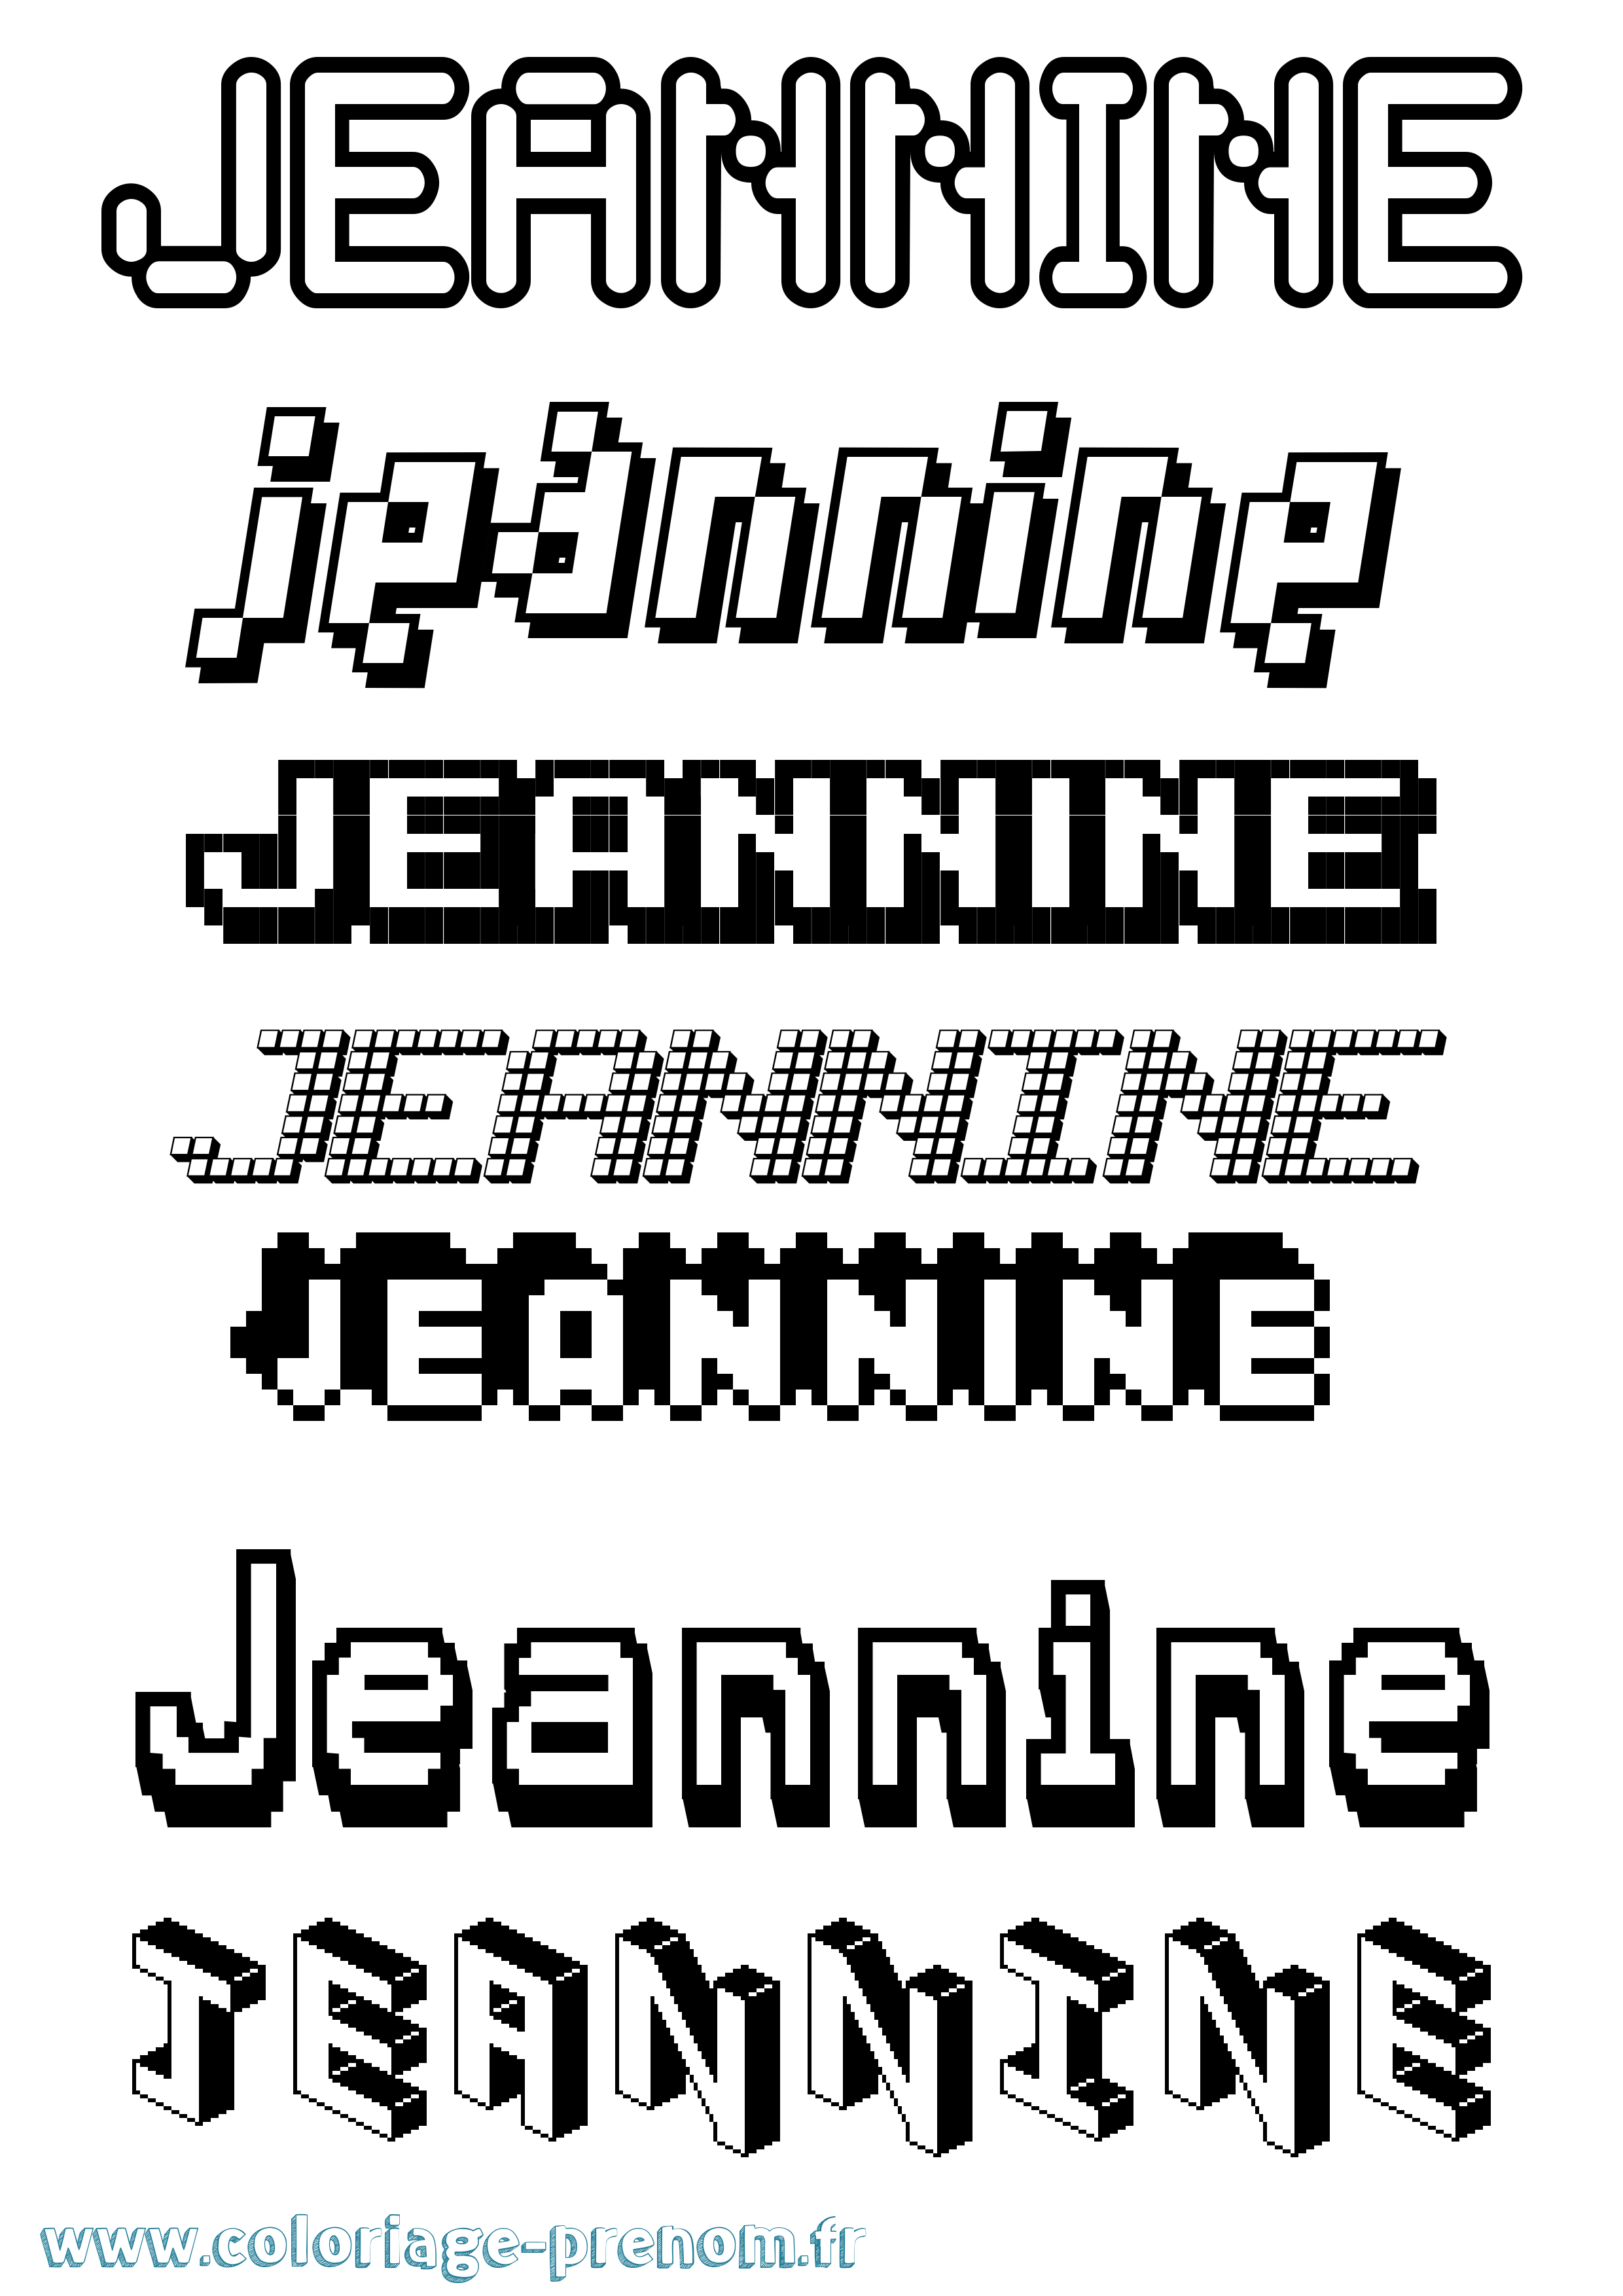 Coloriage prénom Jeannine Pixel